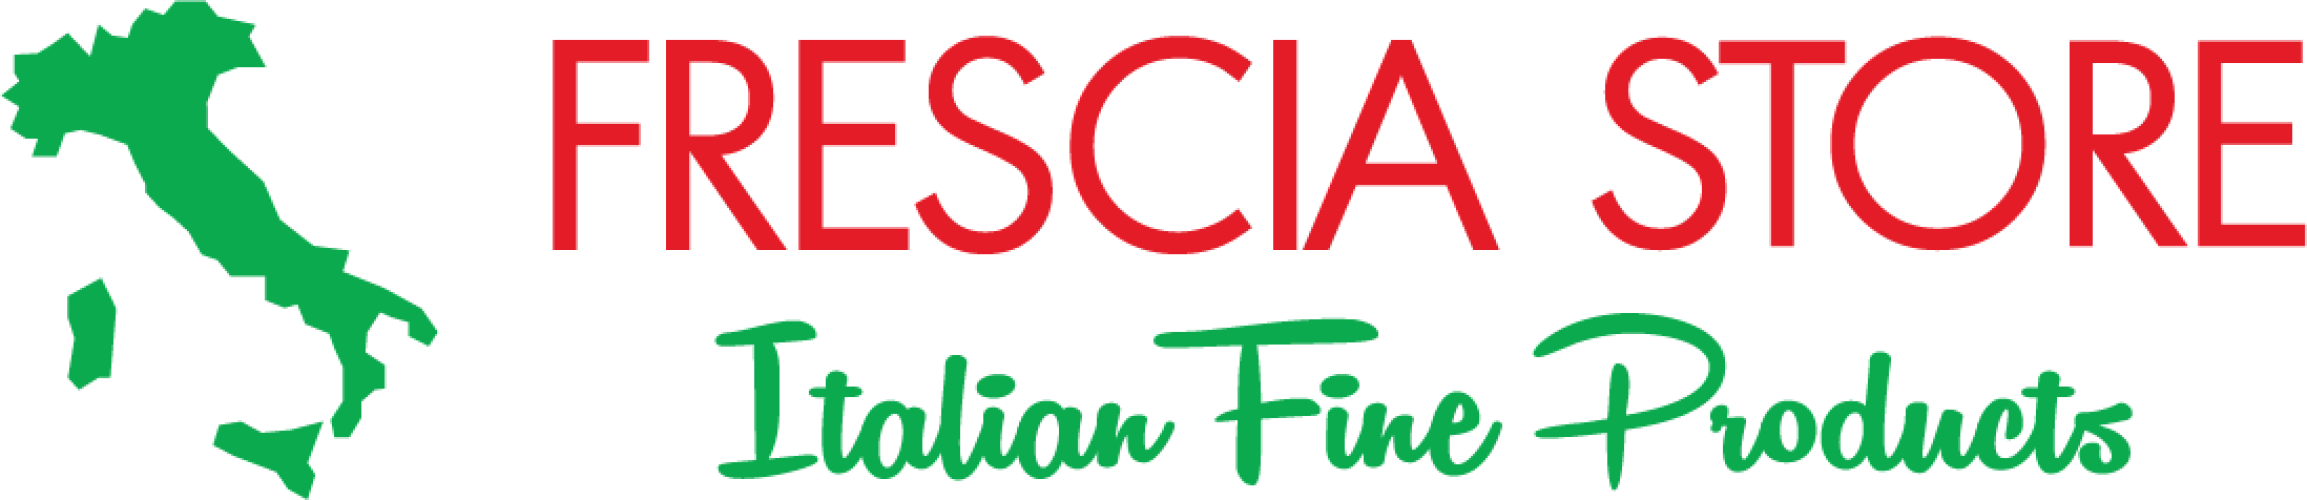 FRESCIA STORE logo